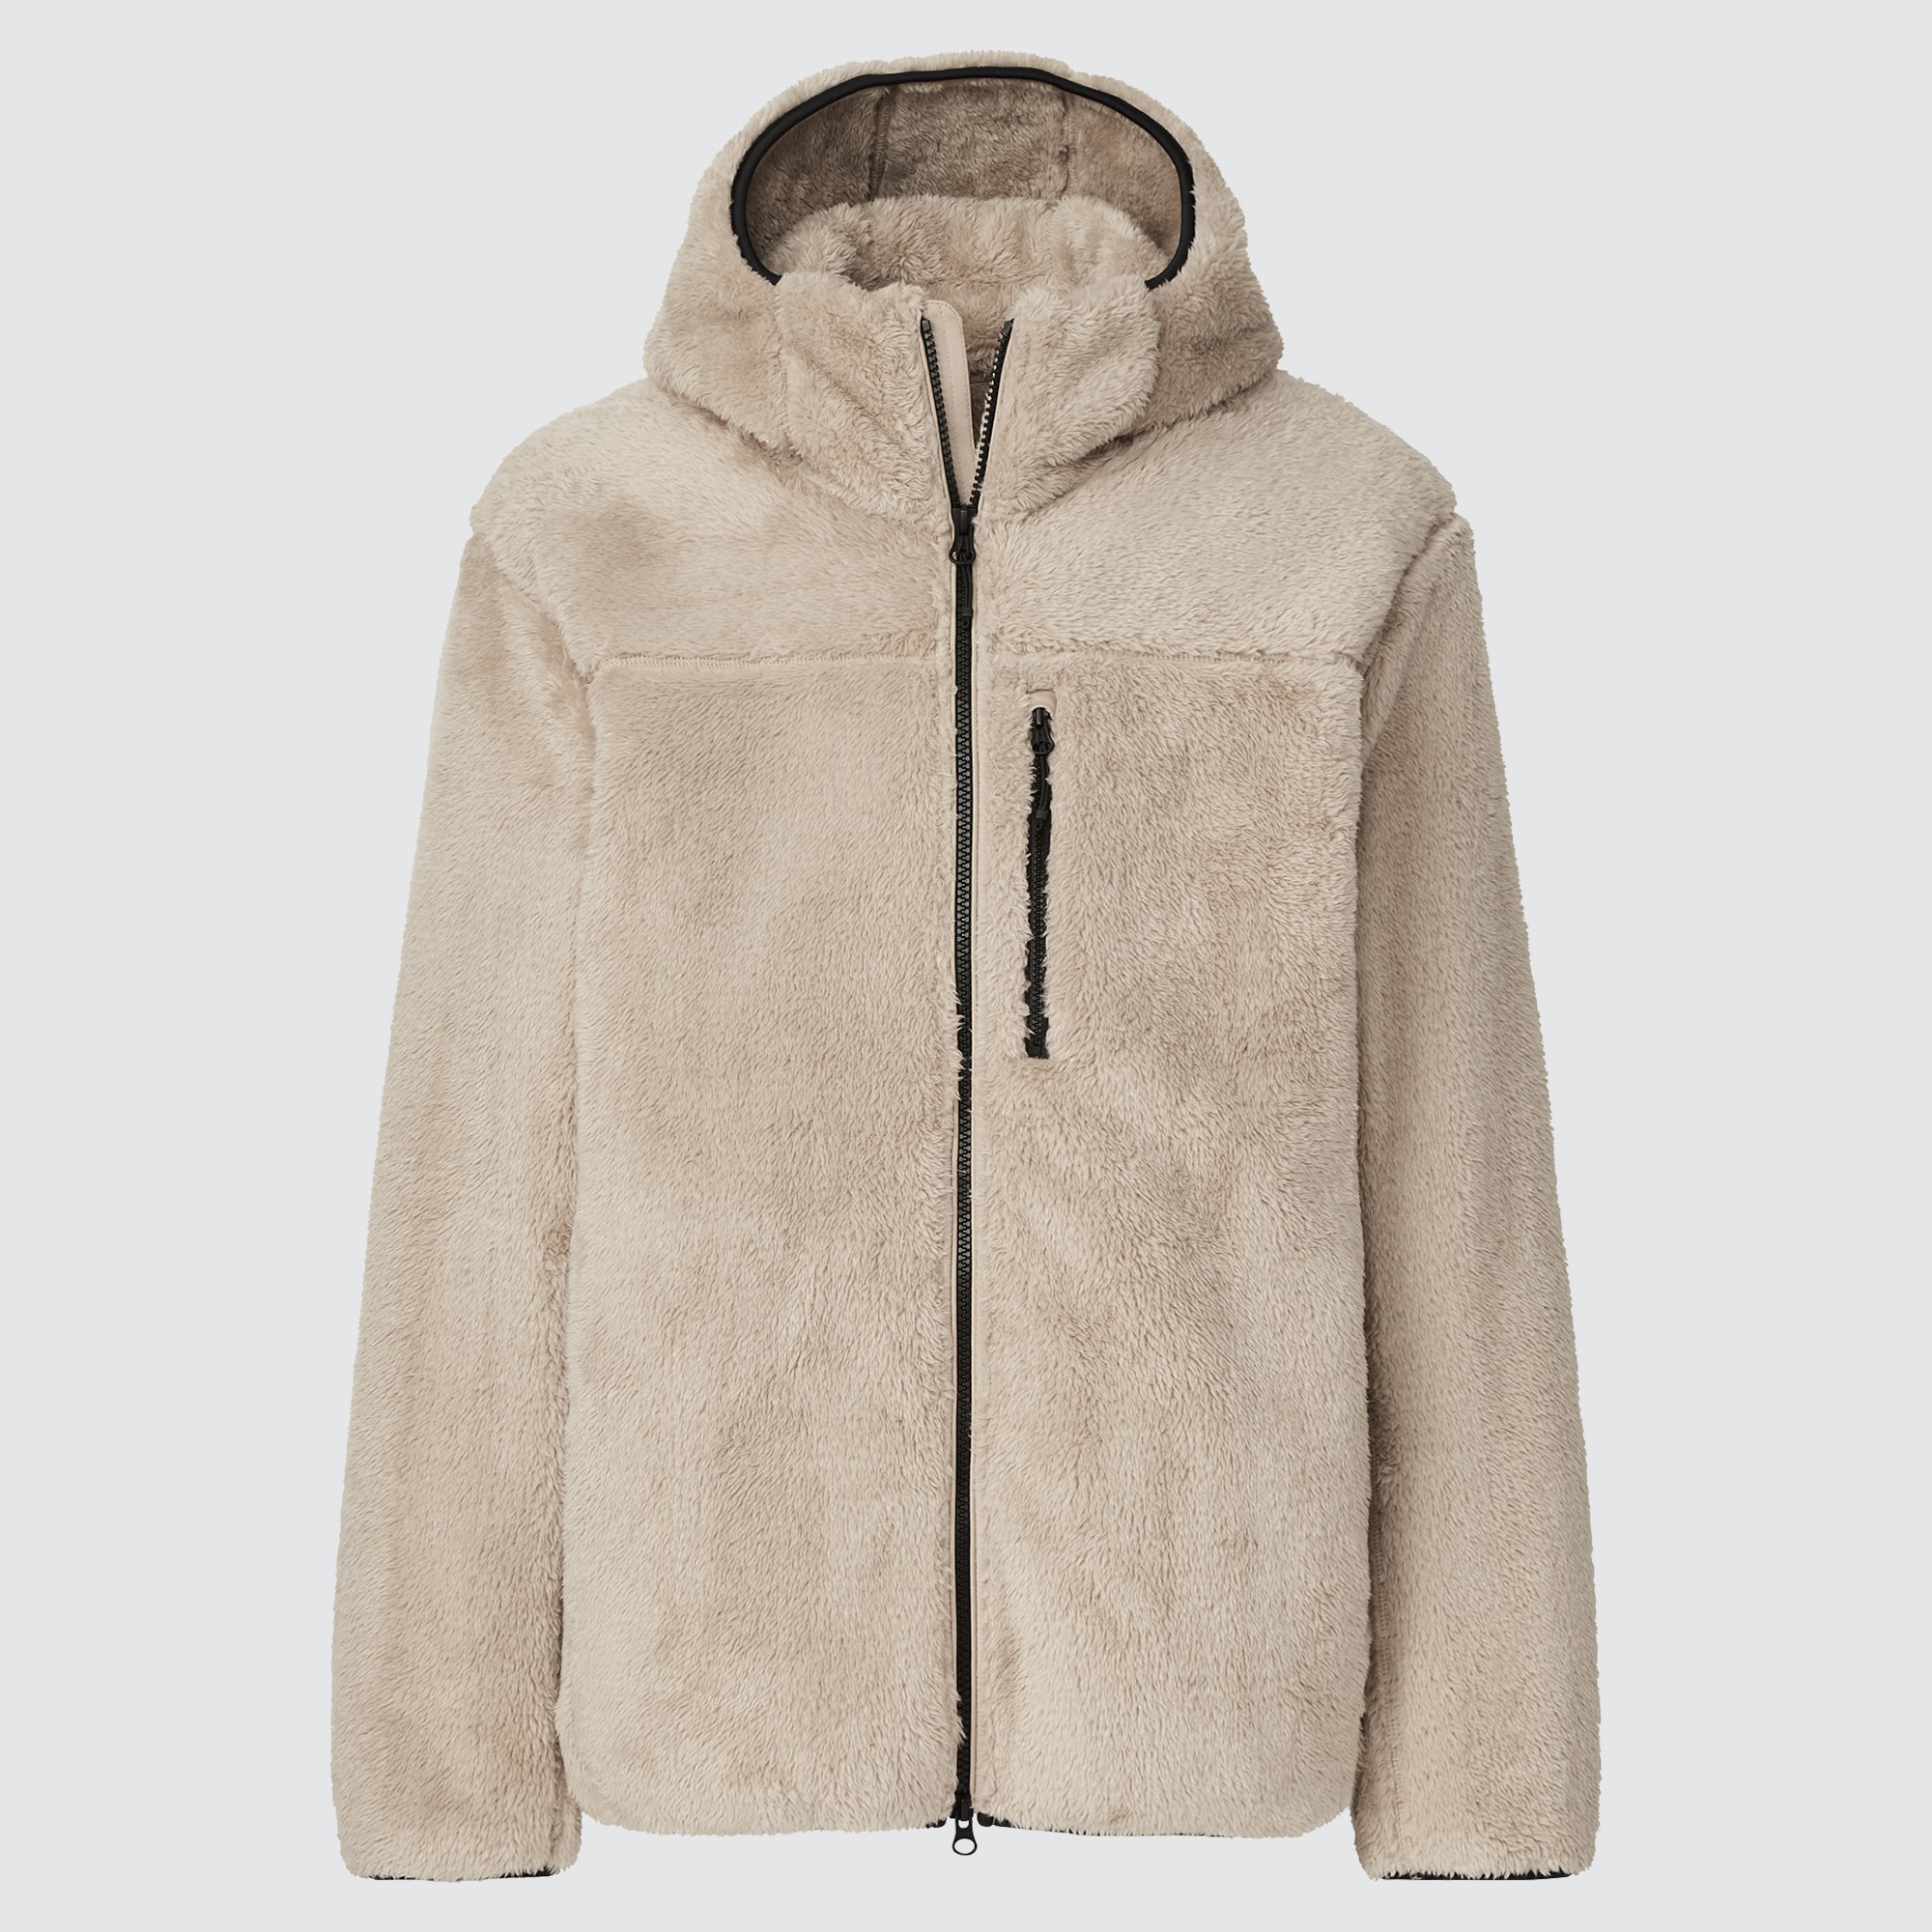 UNIQLO Windproof Fleece Long-Sleeve Full-Zip Jacket | StyleHint